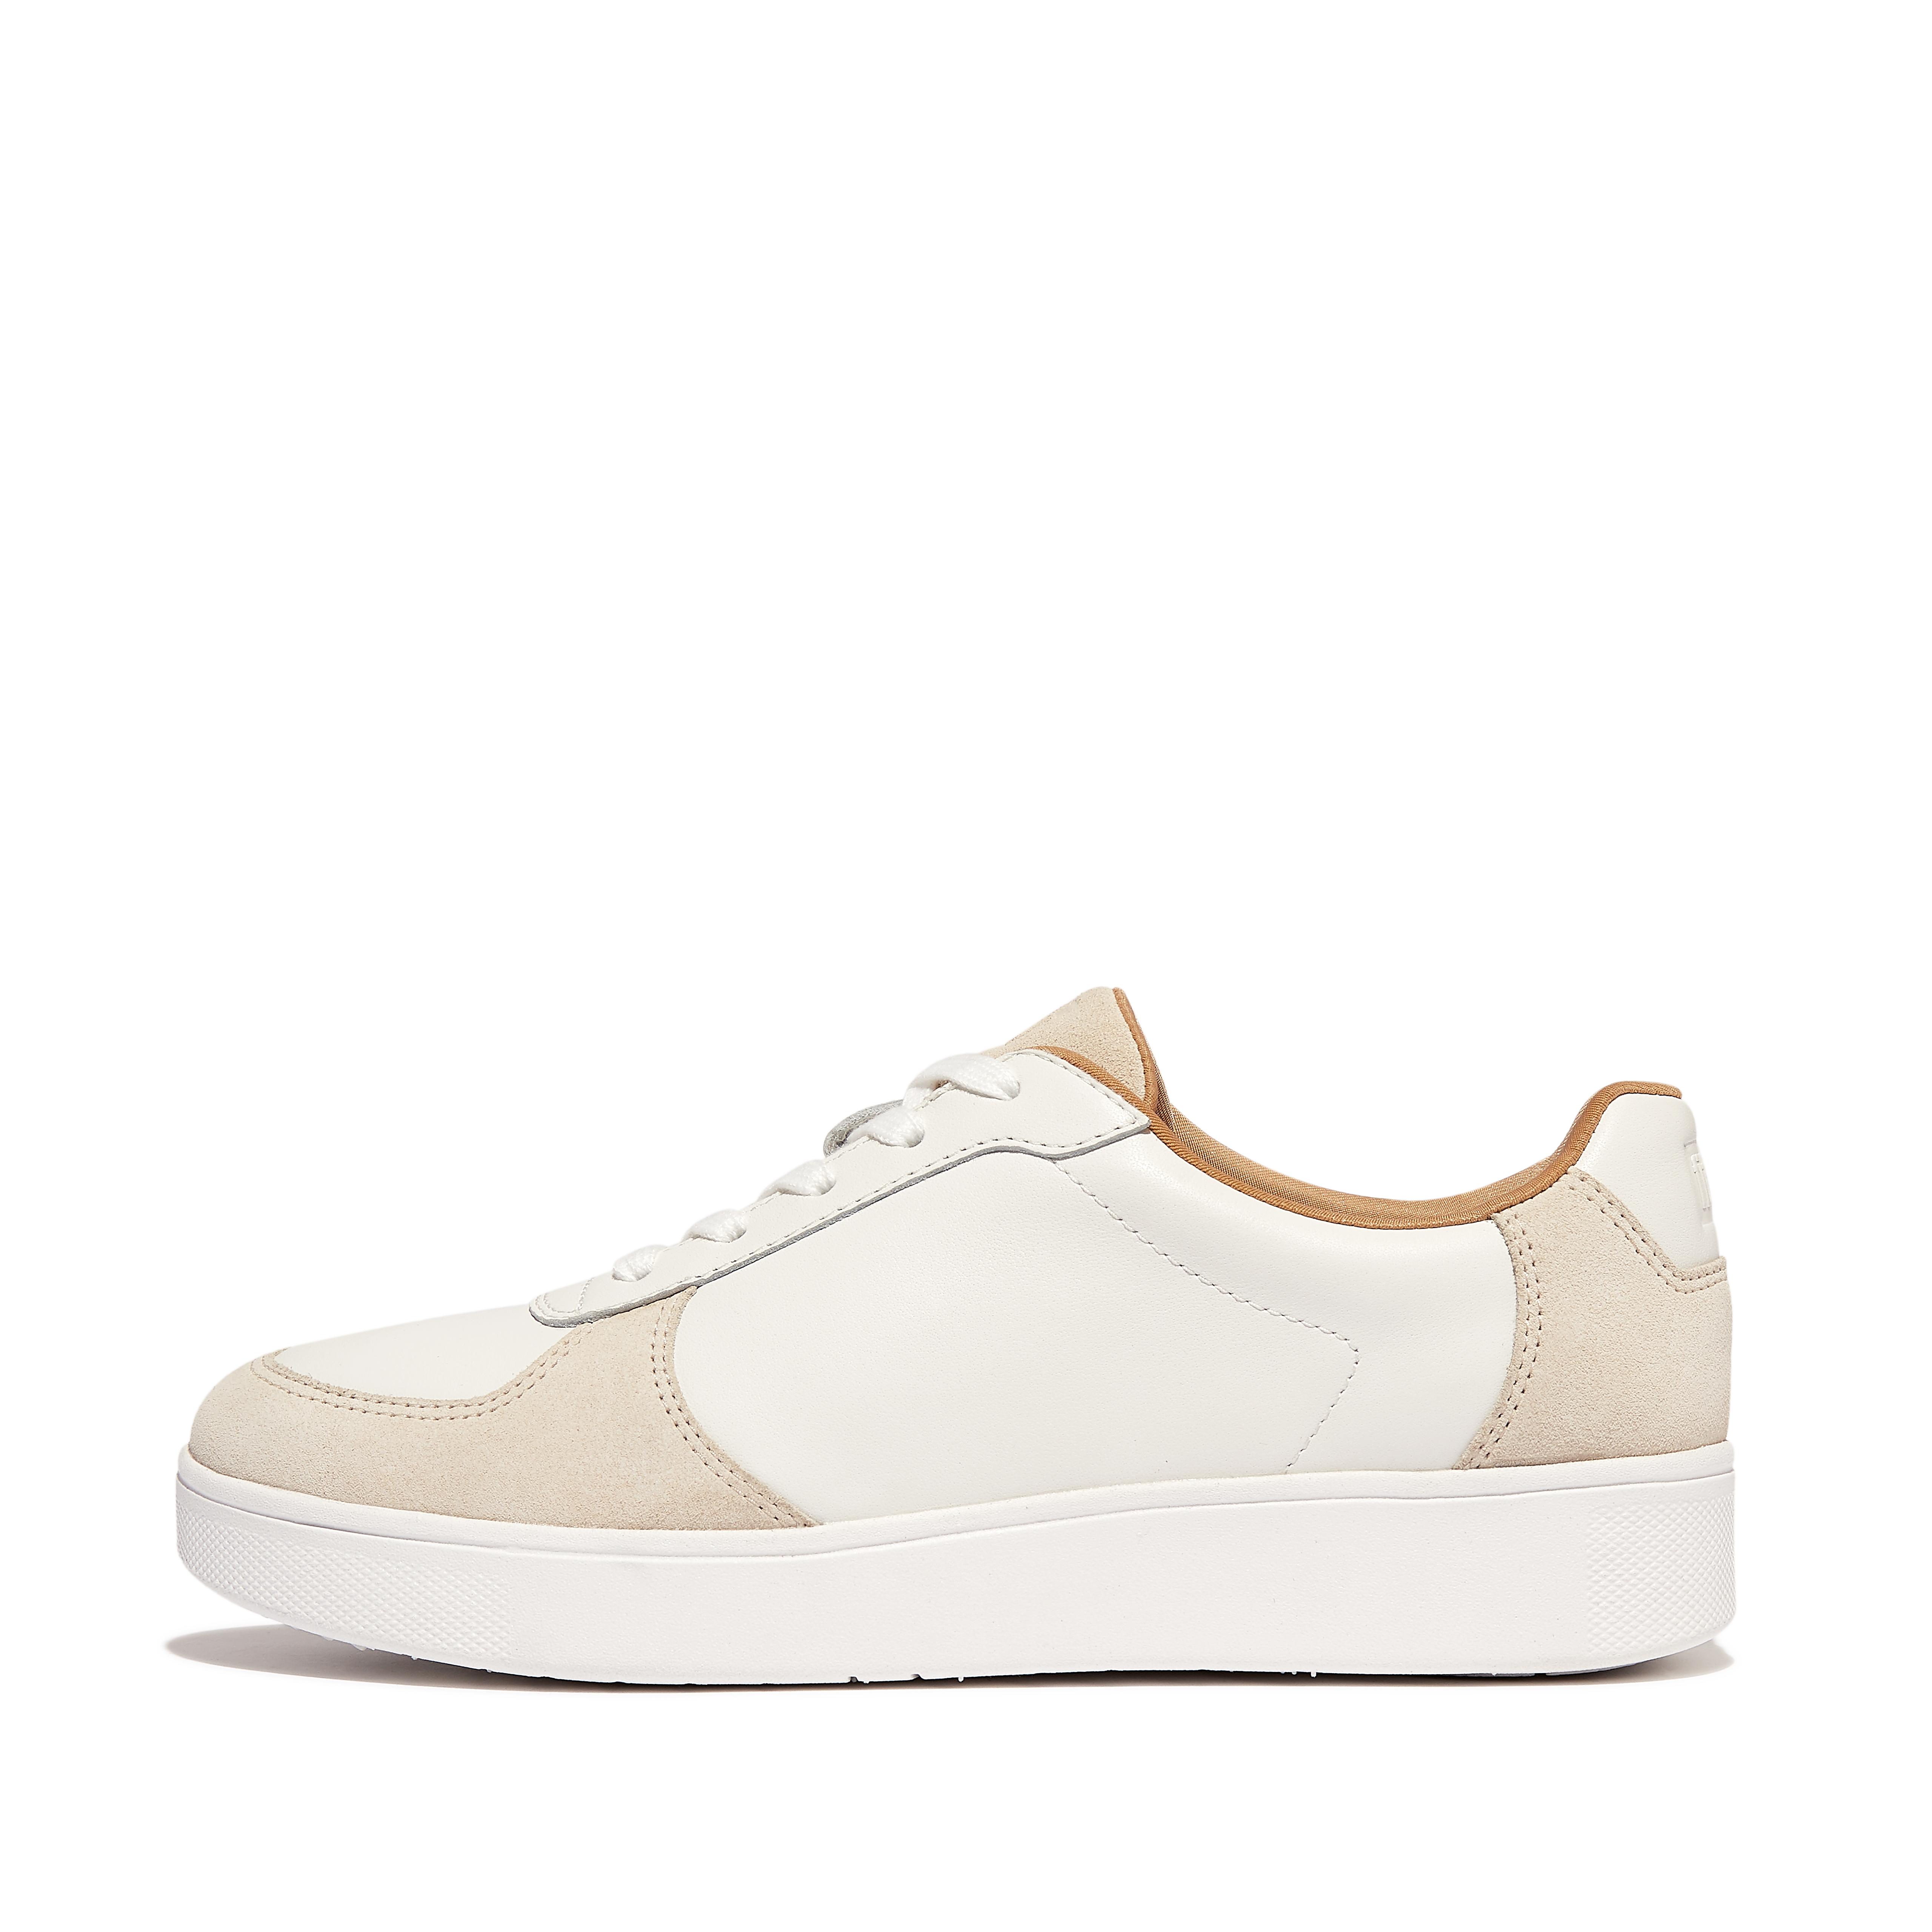 핏플랍 Fitflop Leather/Suede Panel Sneakers,White/Beige